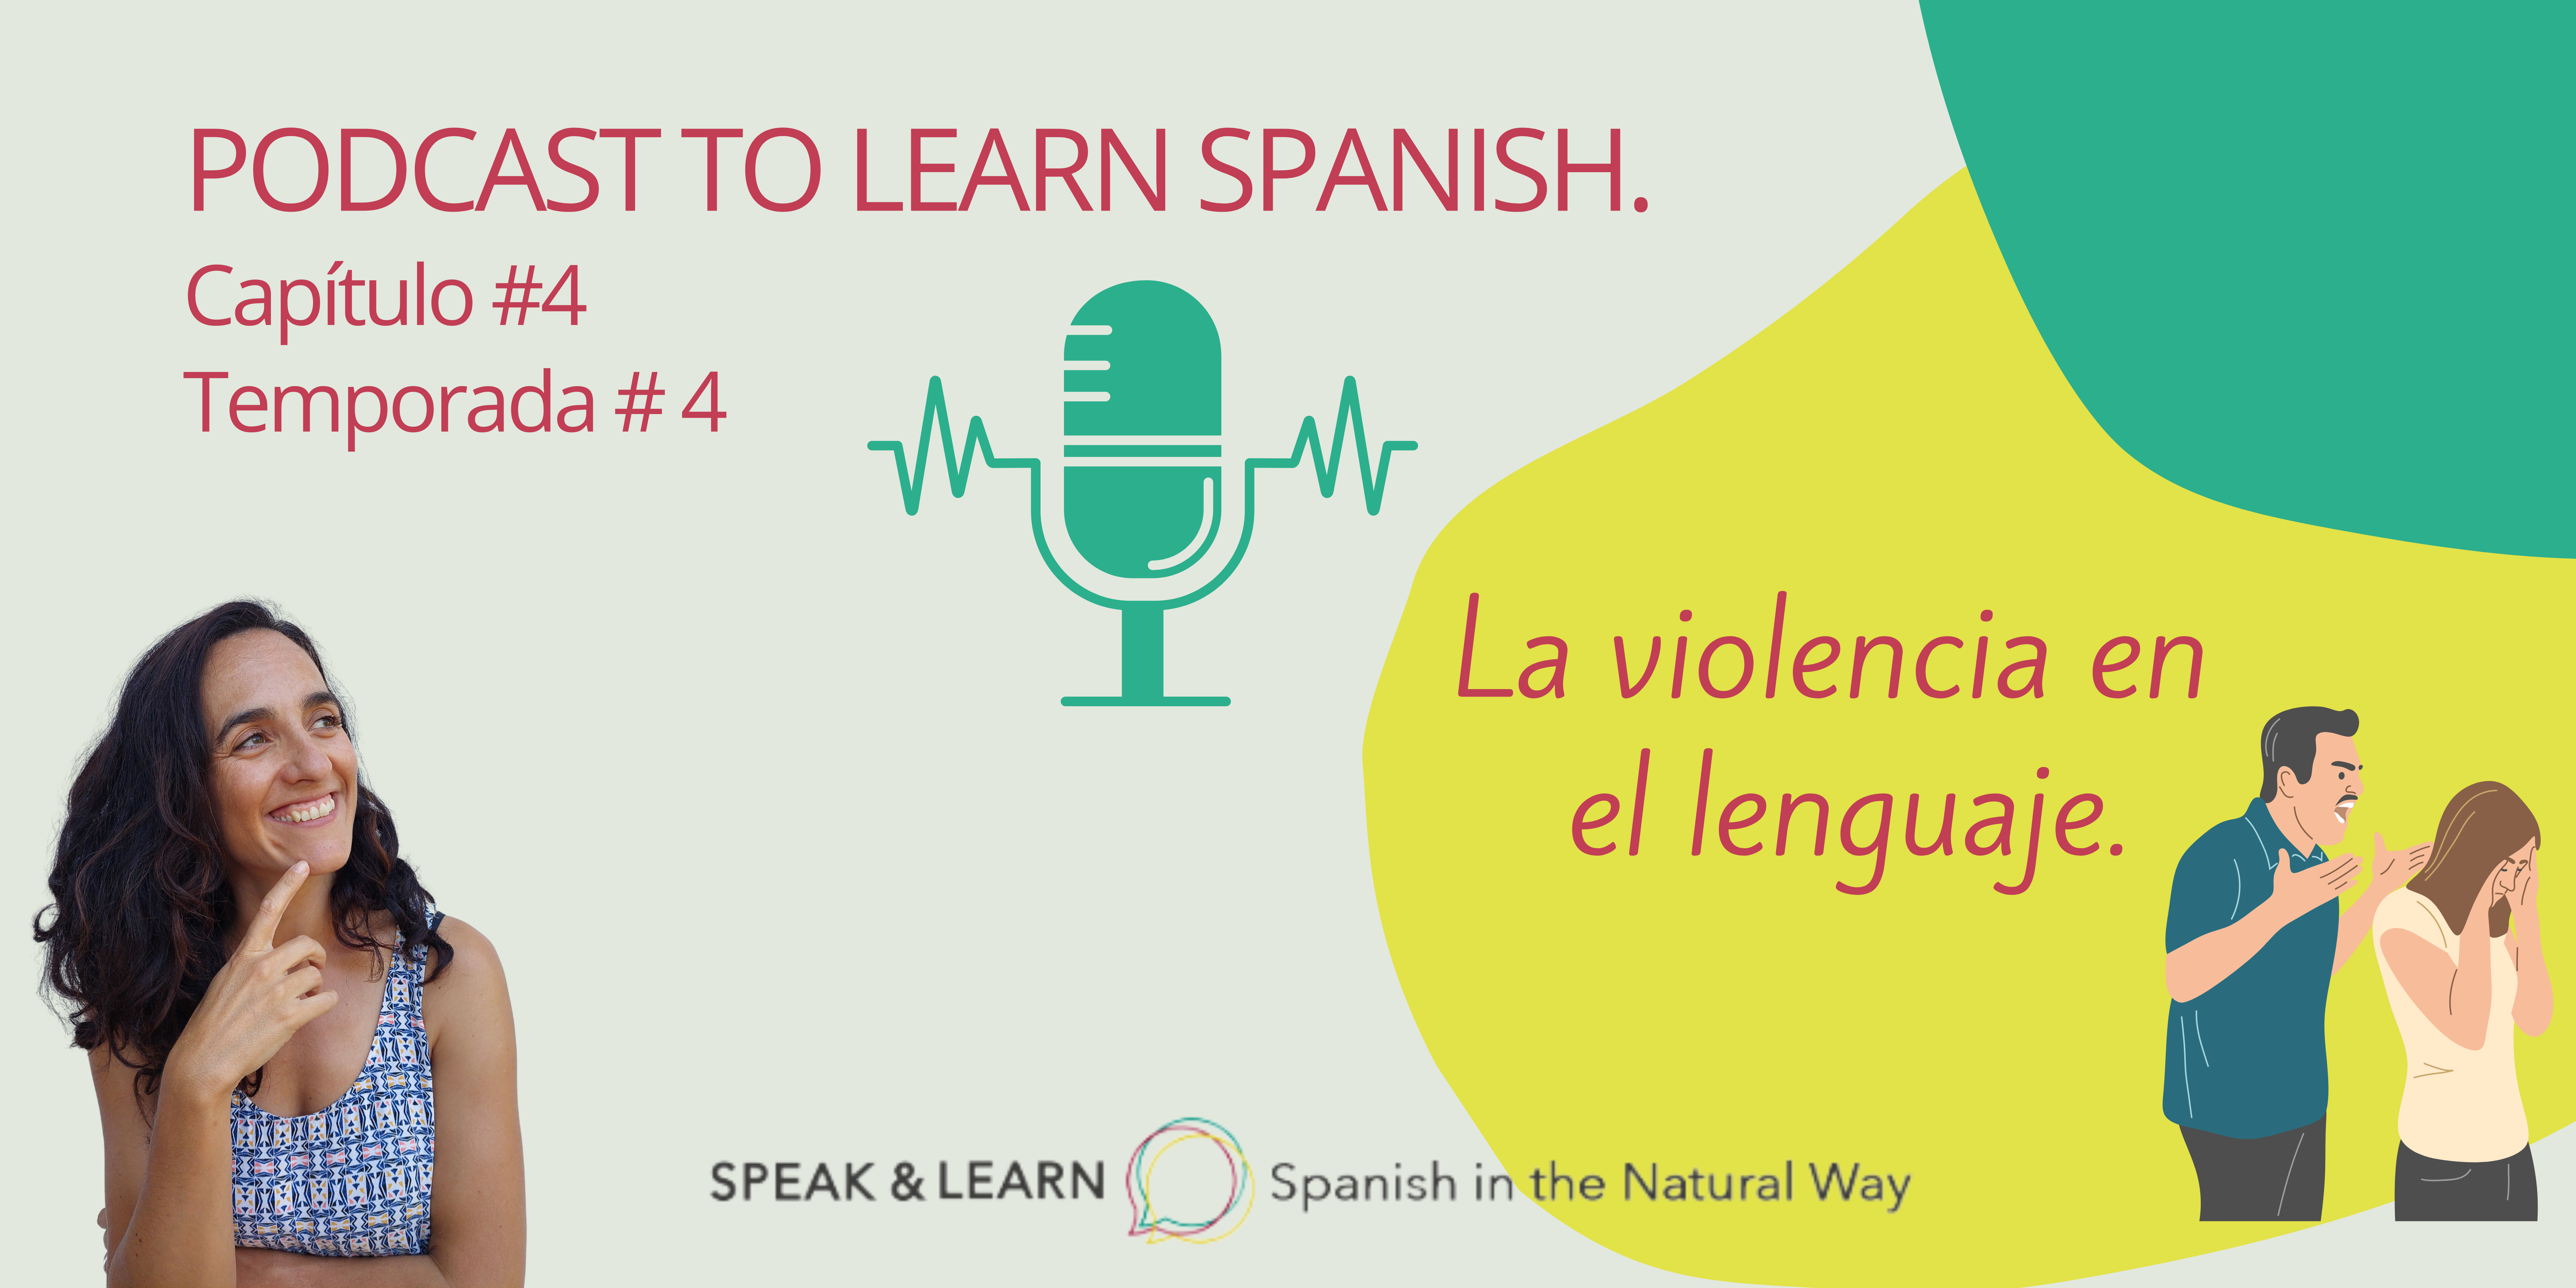 hoy en nuestro Podcast para aprender español hablamos de la violencia en el lenguaje